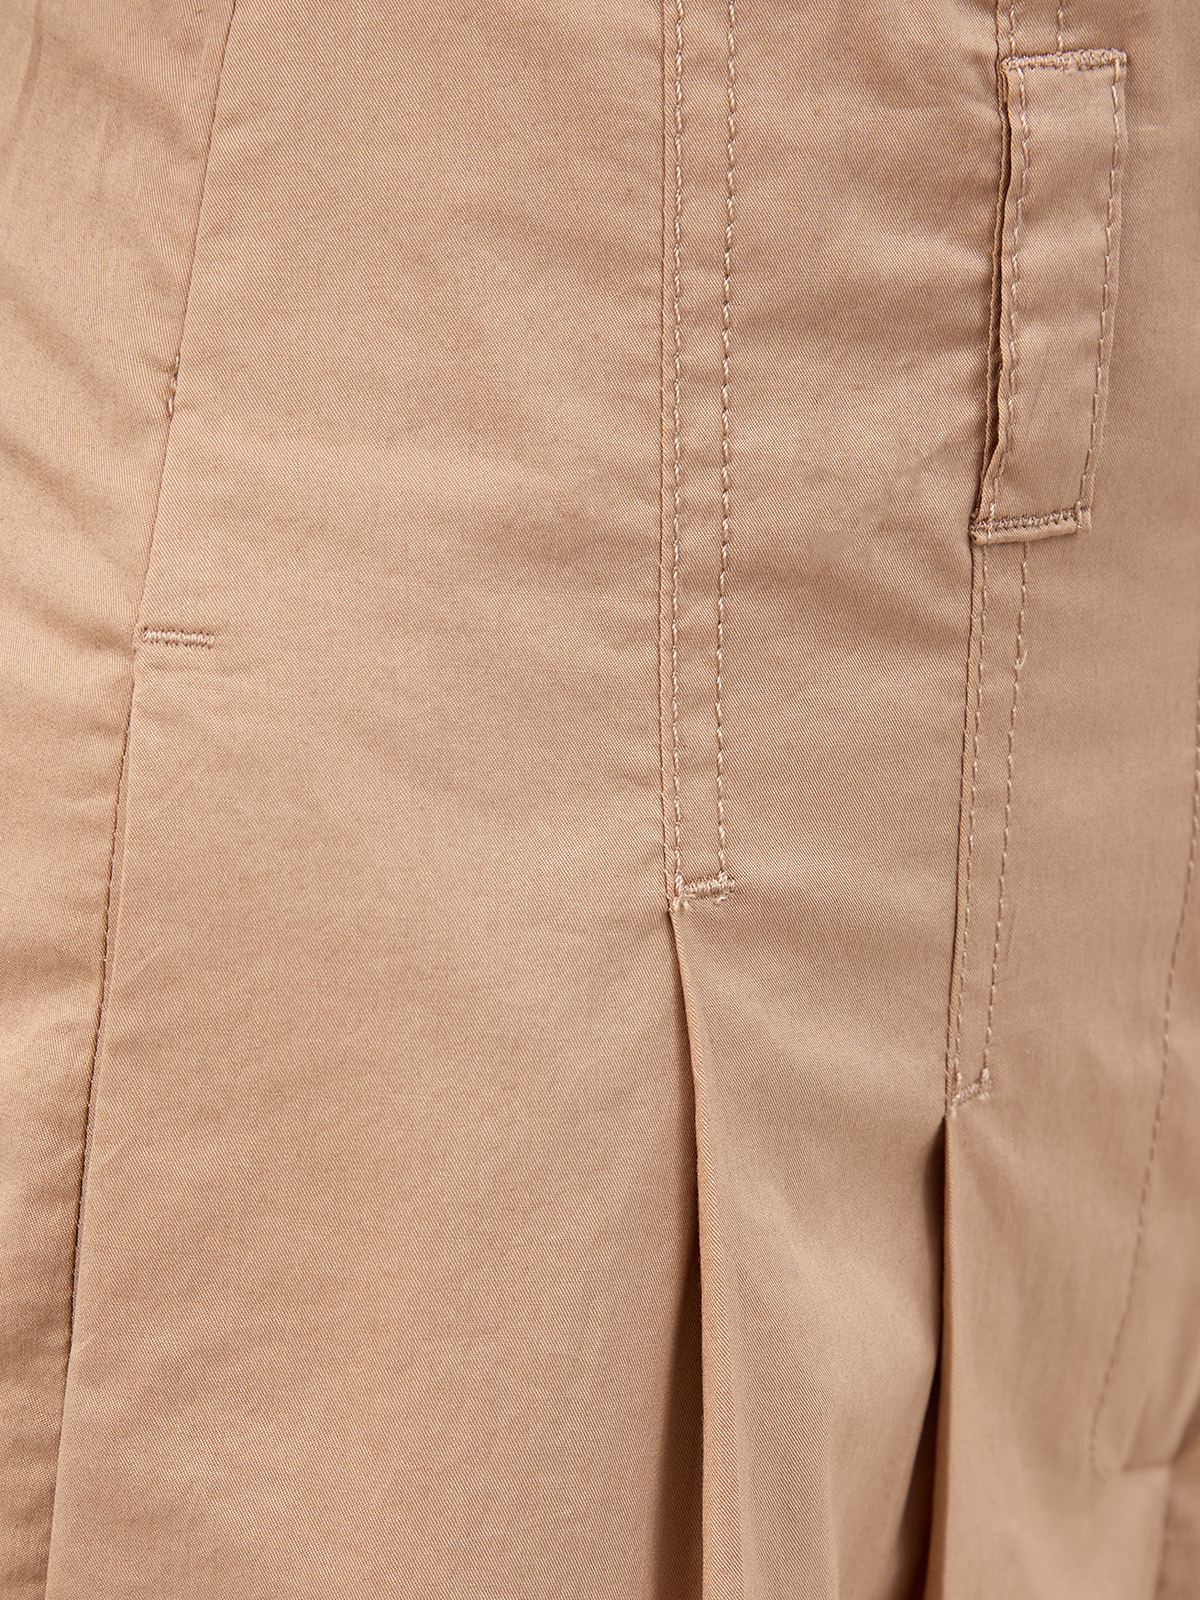 Широкие брюки из хлопка на высокой посадке с защипами PESERICO, цвет коричневый, размер 40;42;44;46 - фото 5